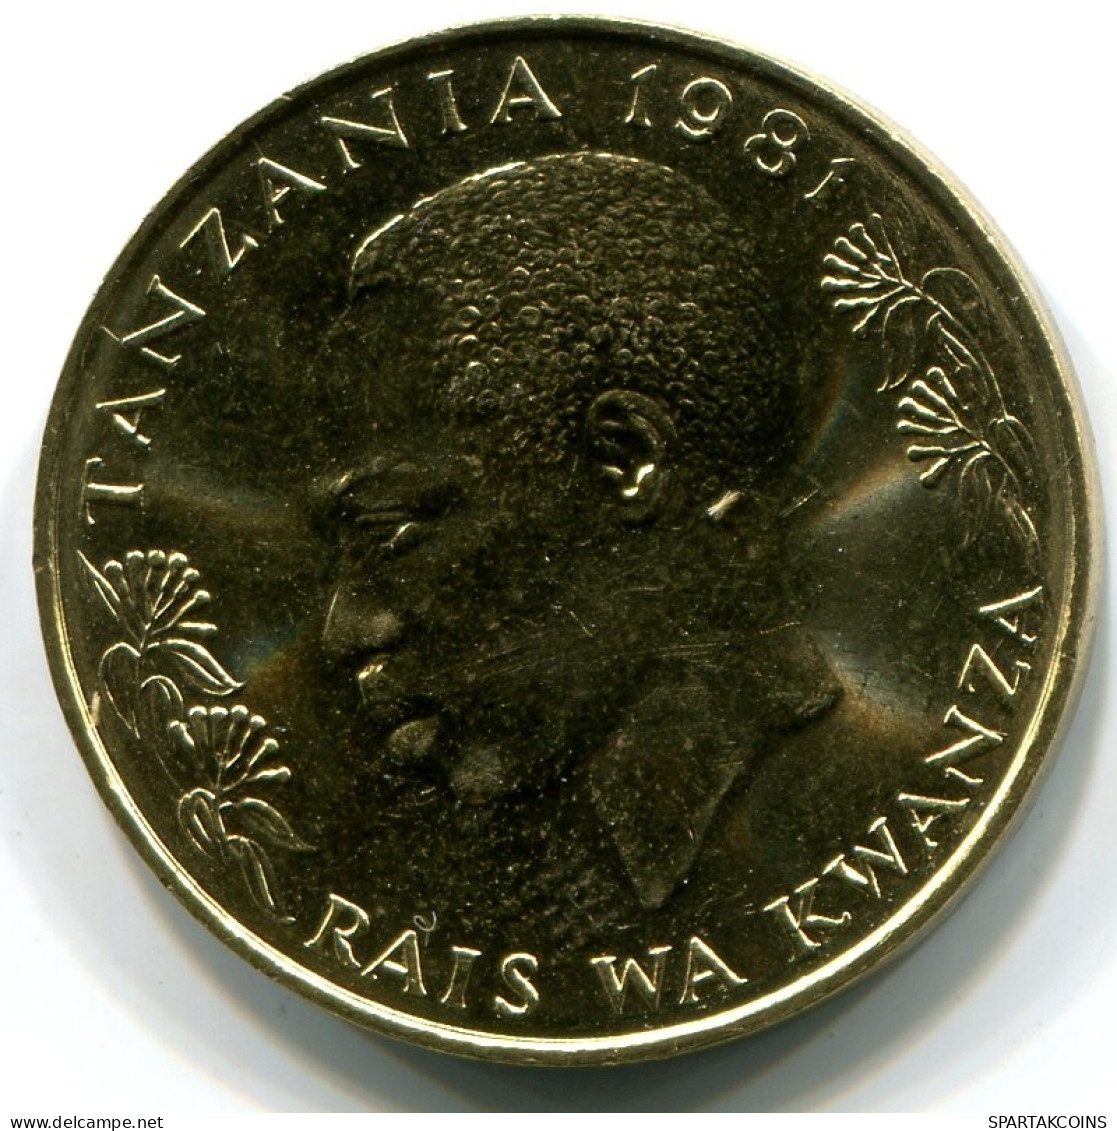 20 SENTI 1981 TANZANIA UNC Ostrich Moneda #W10990.E - Tanzanie